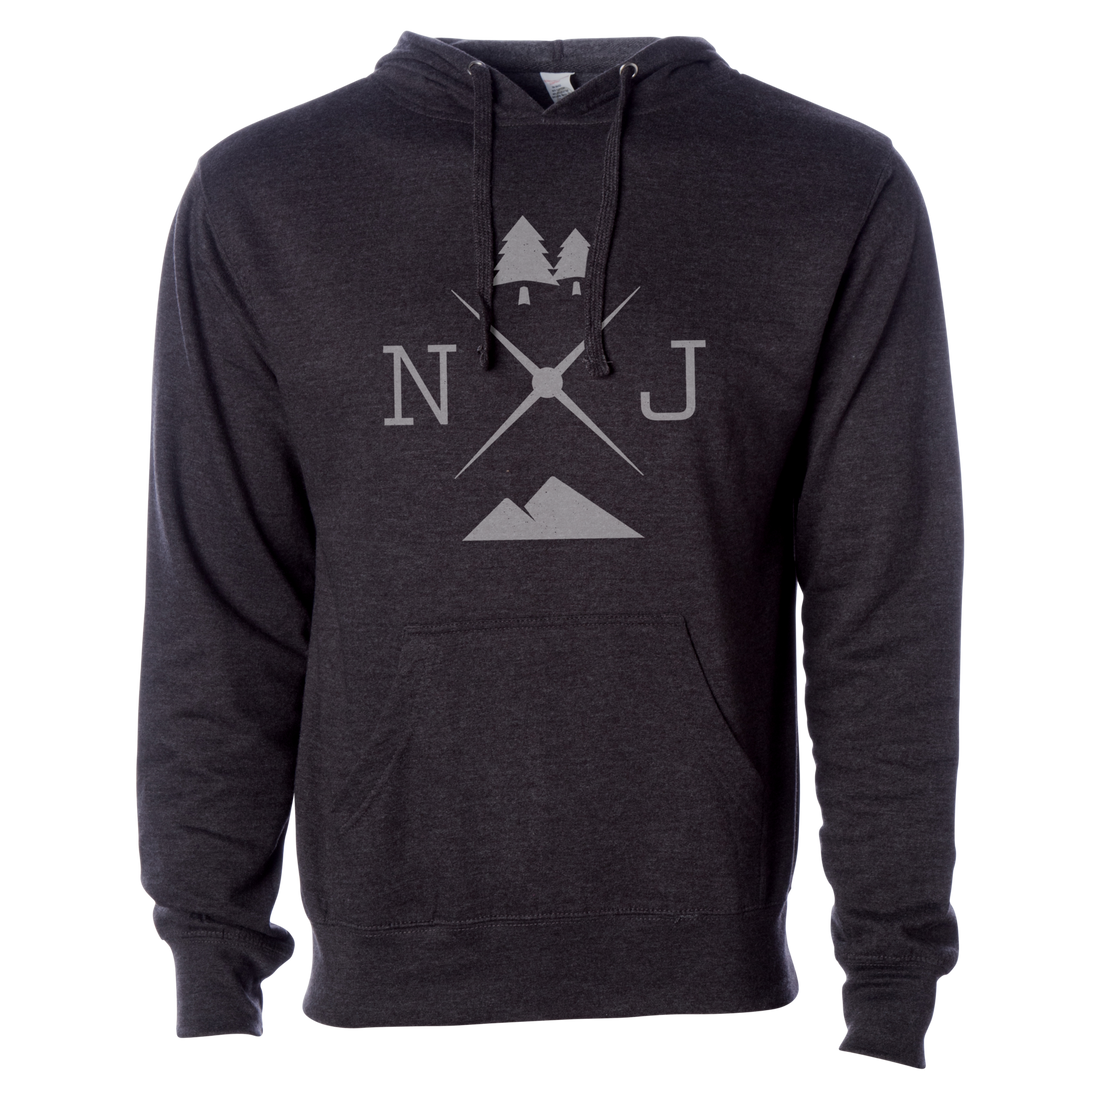 New Jersey Hoodie Sweatshirt